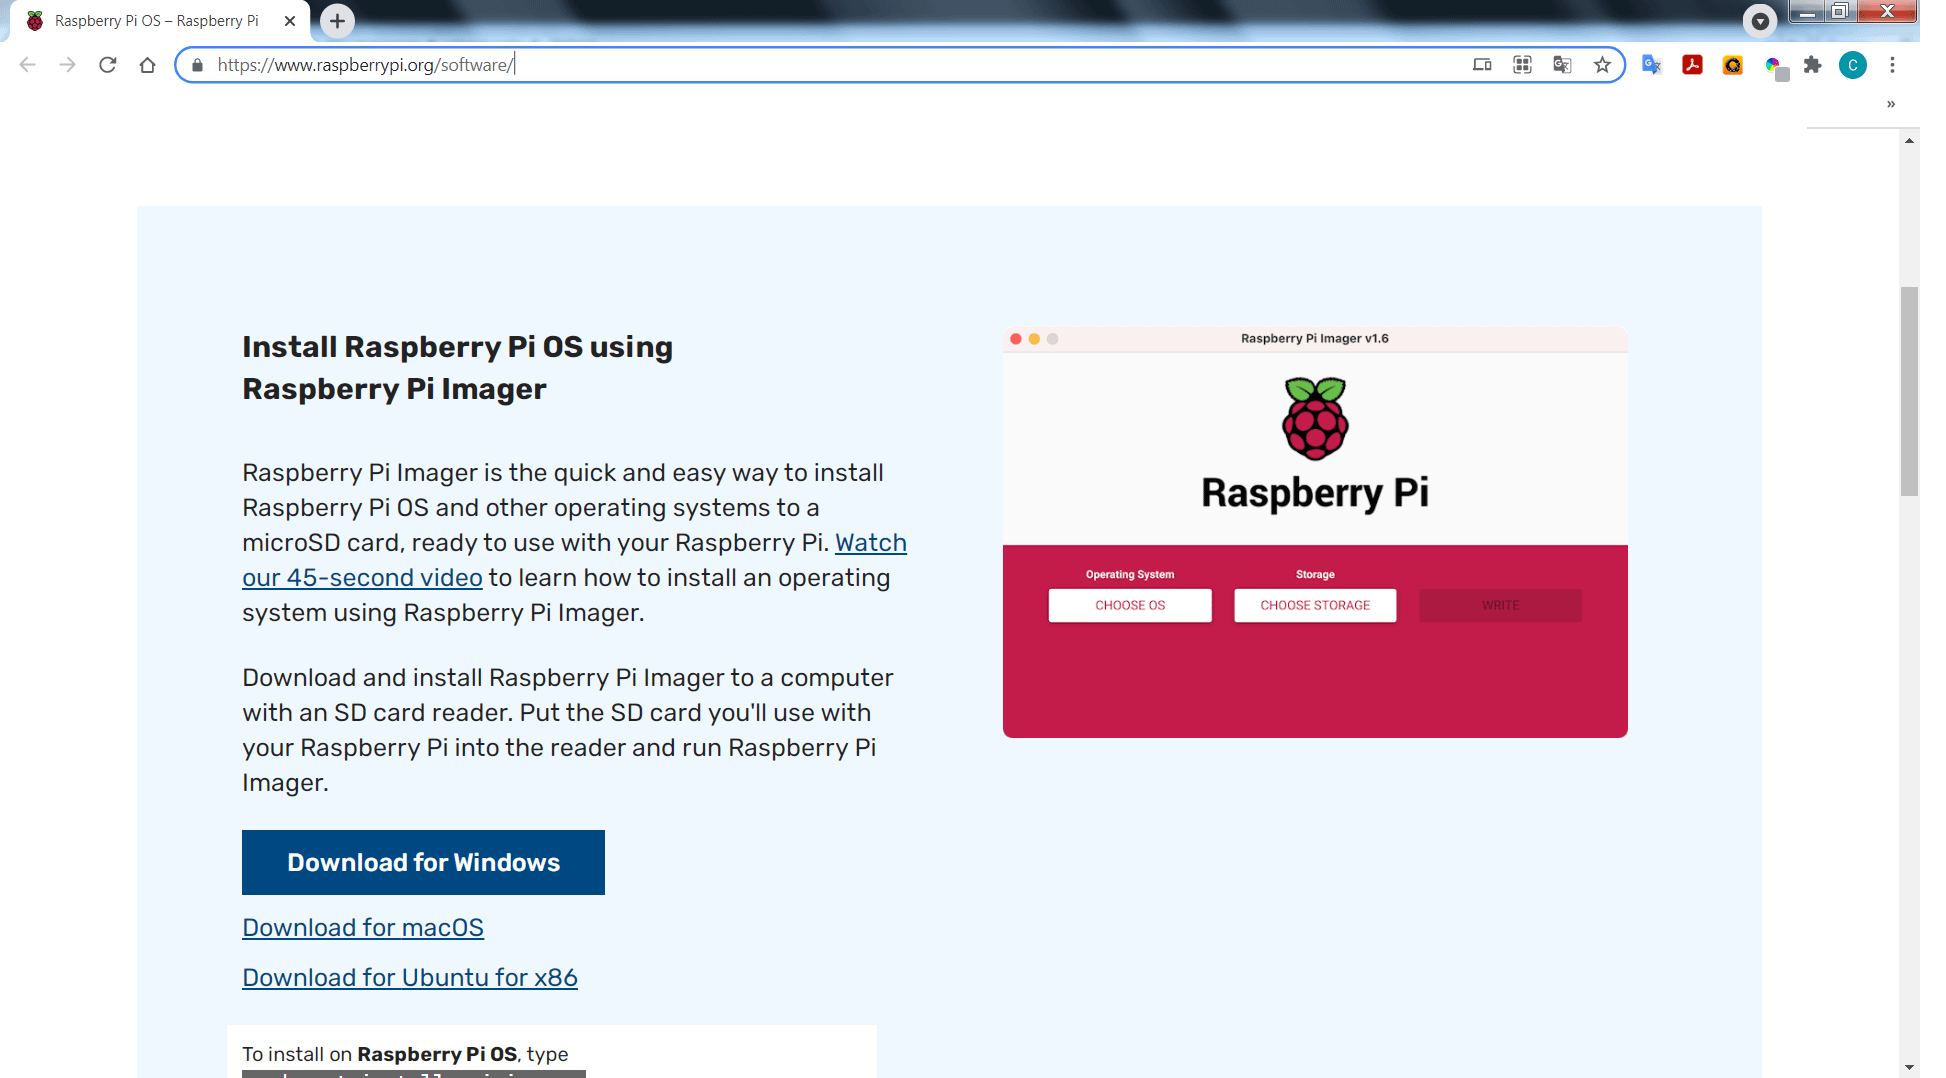 Esta es la página de descarga de Raspberry imager.